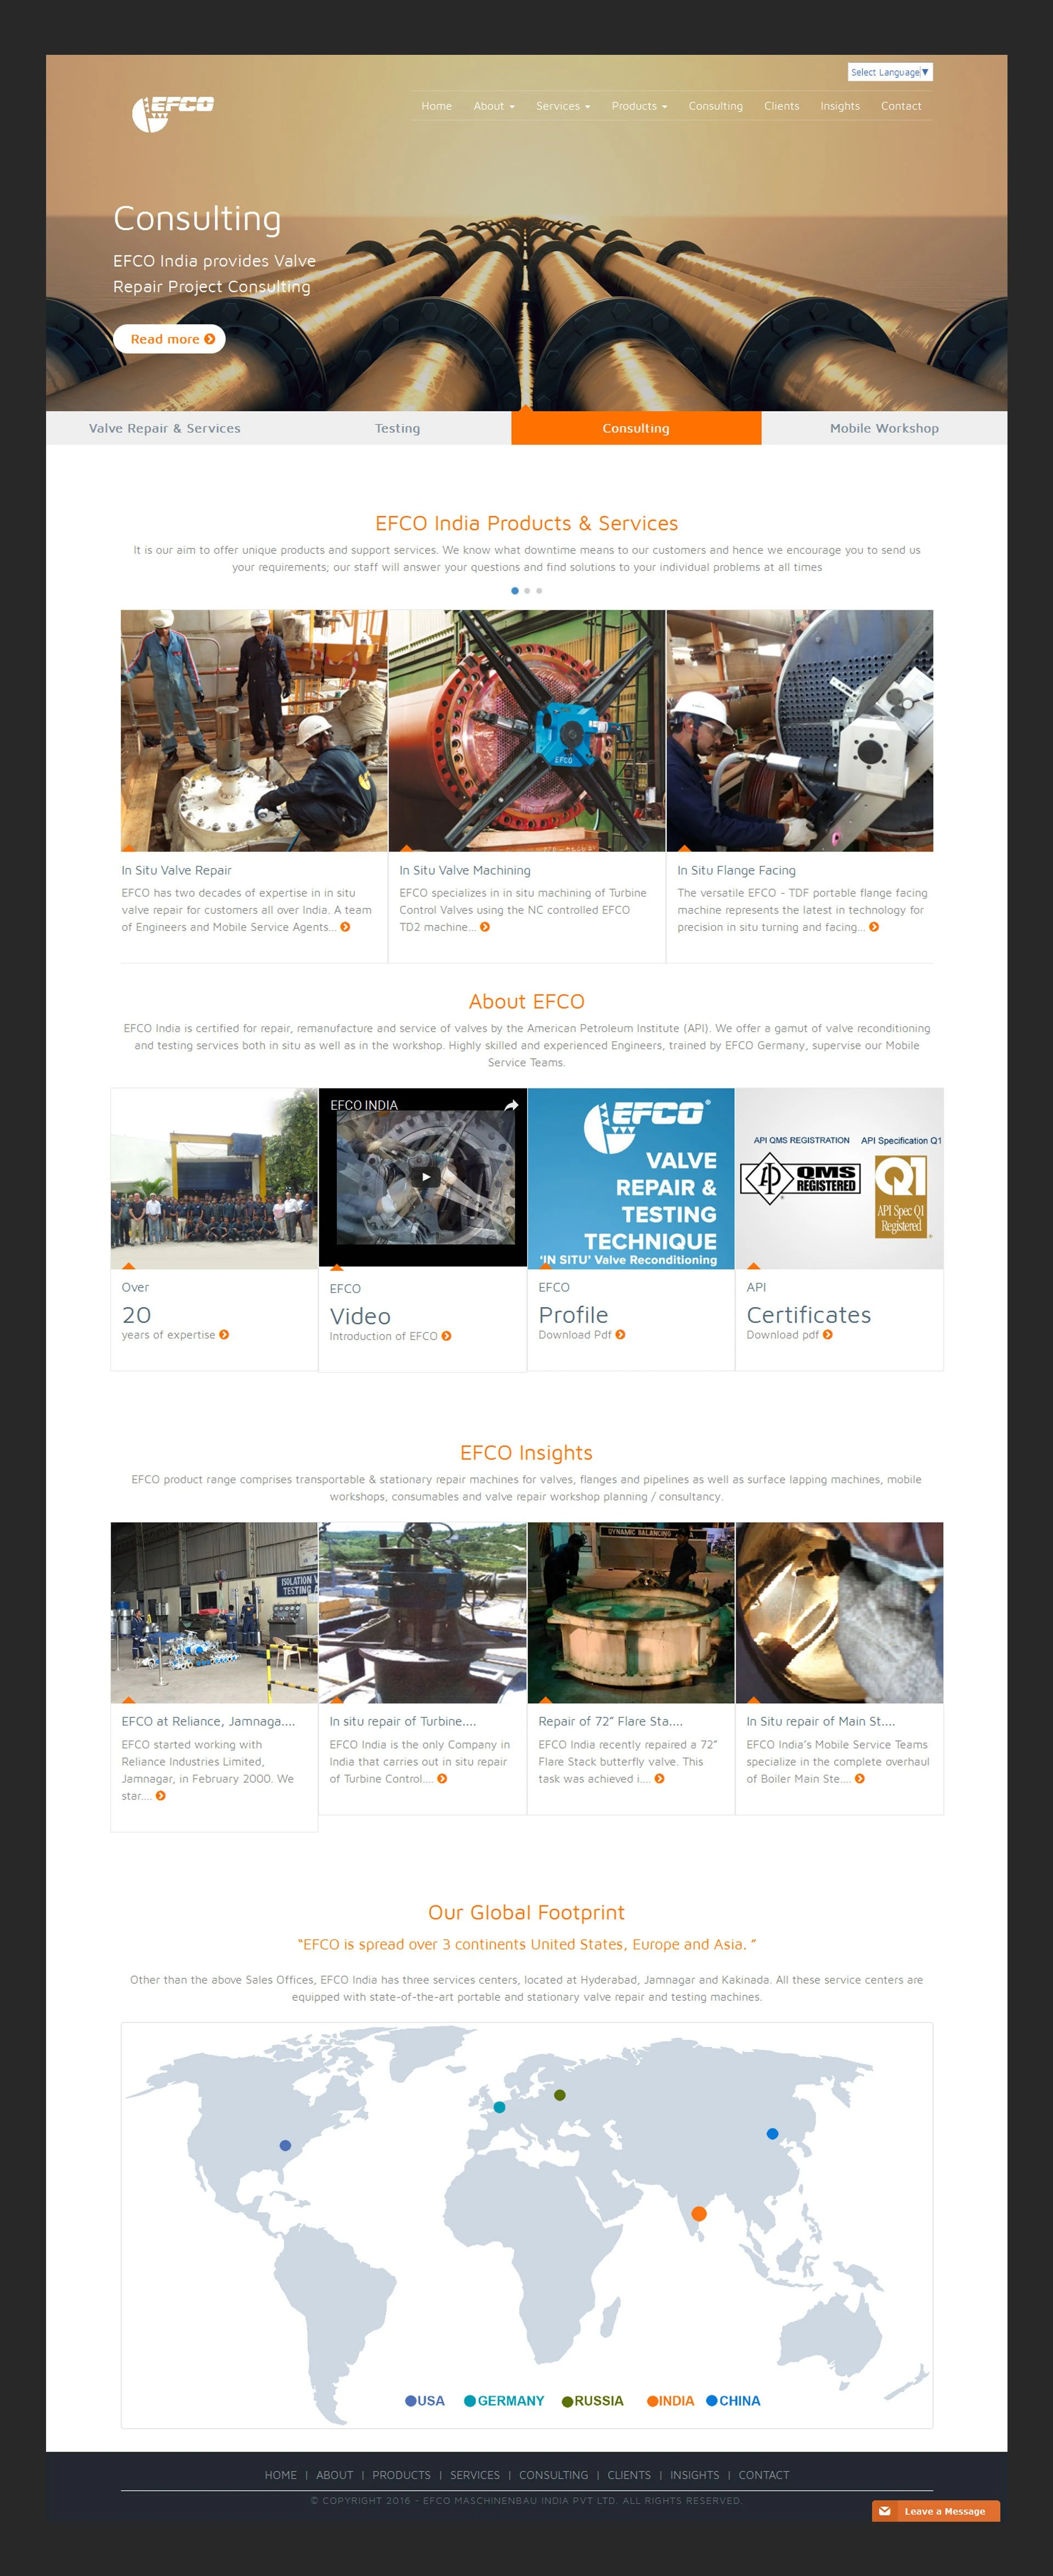 Create Studios Website Design Portfilio Image